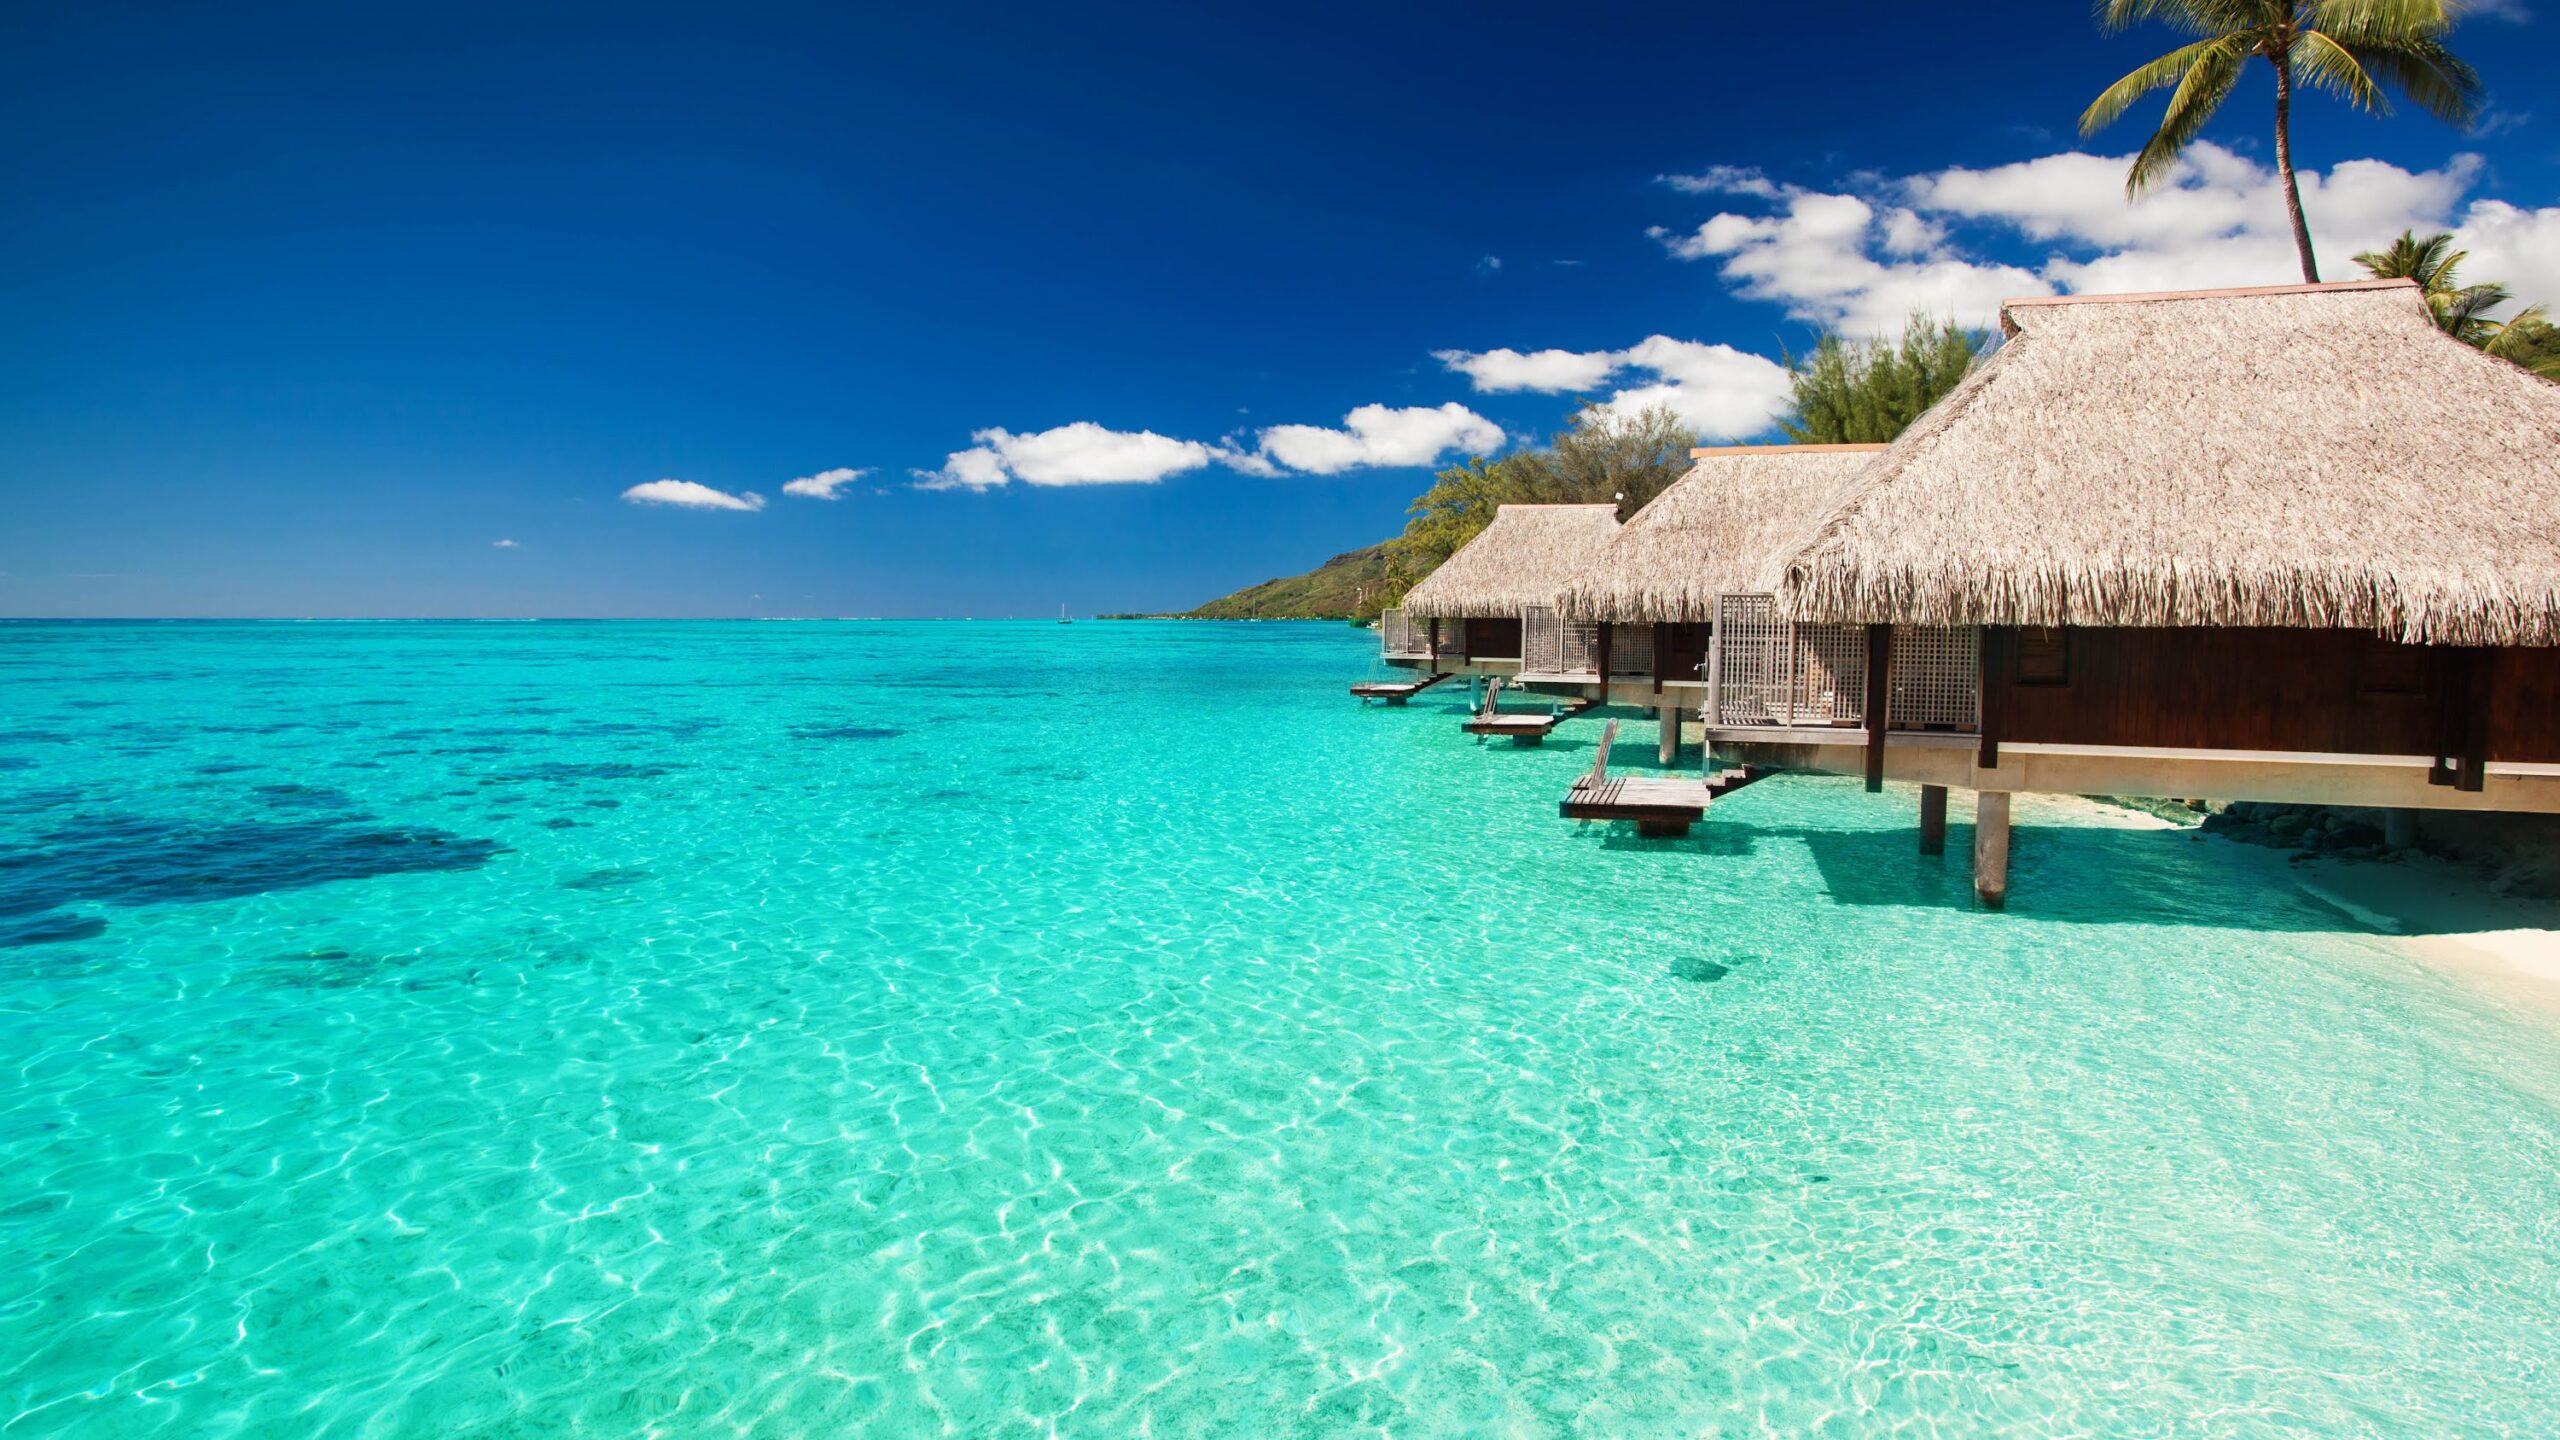 Комфортный пляжный отдых без визы на Мальдивах